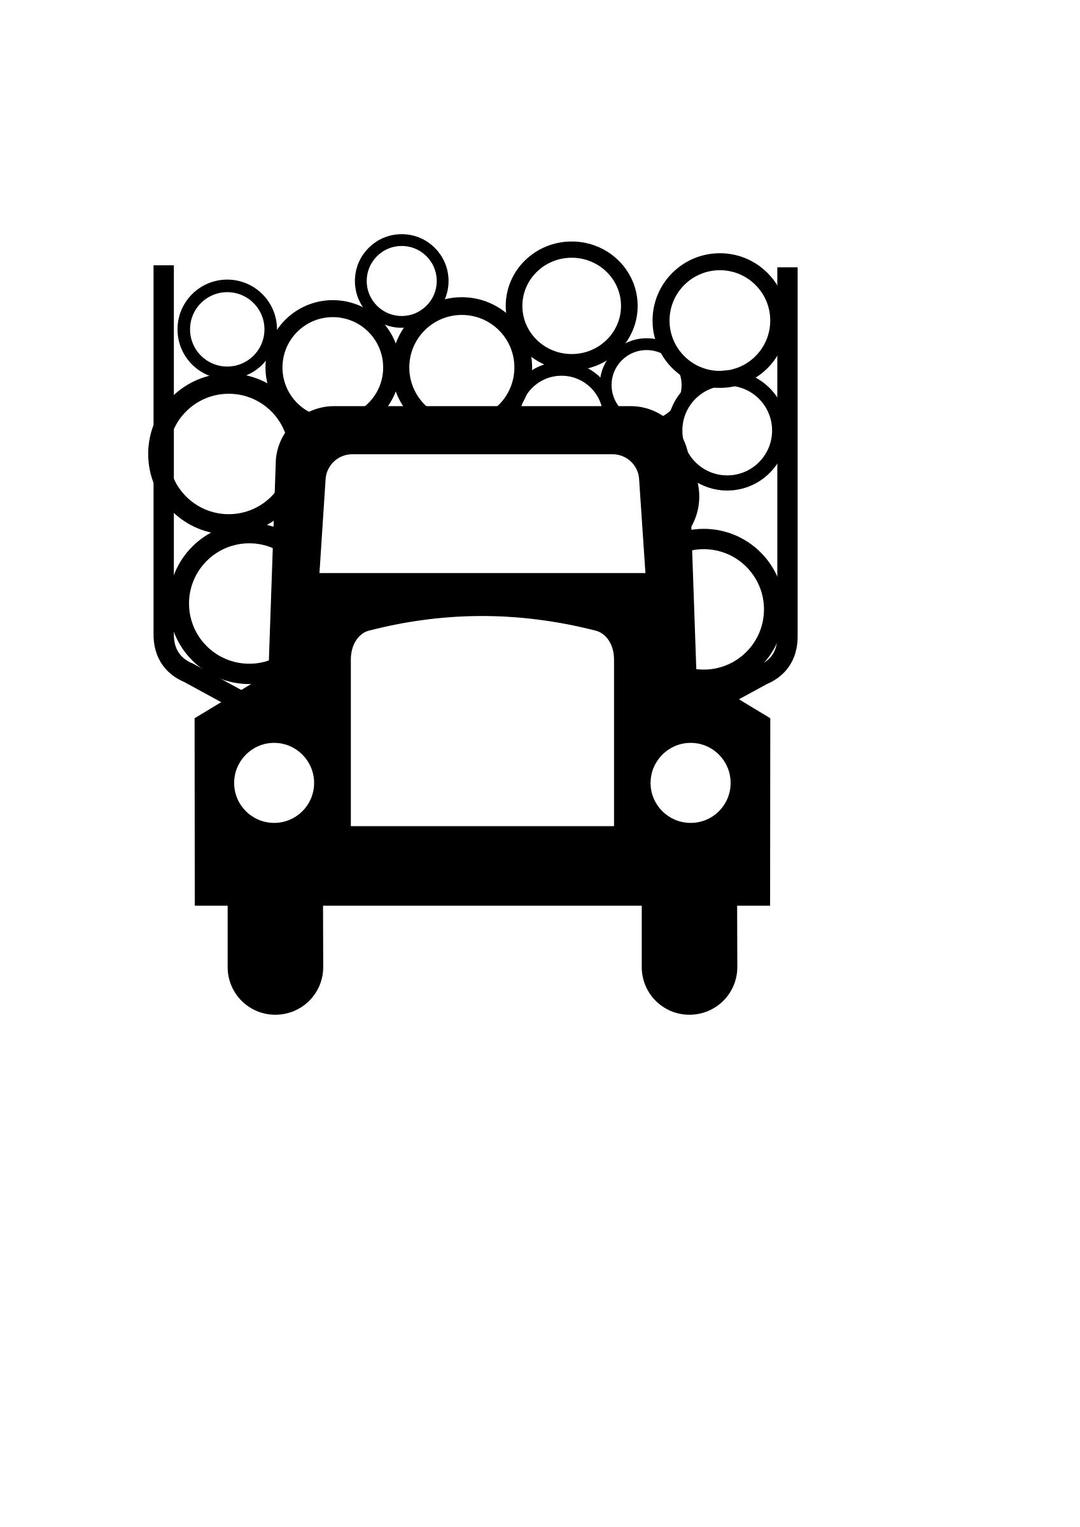 Logging Truck symbol or sign png transparent